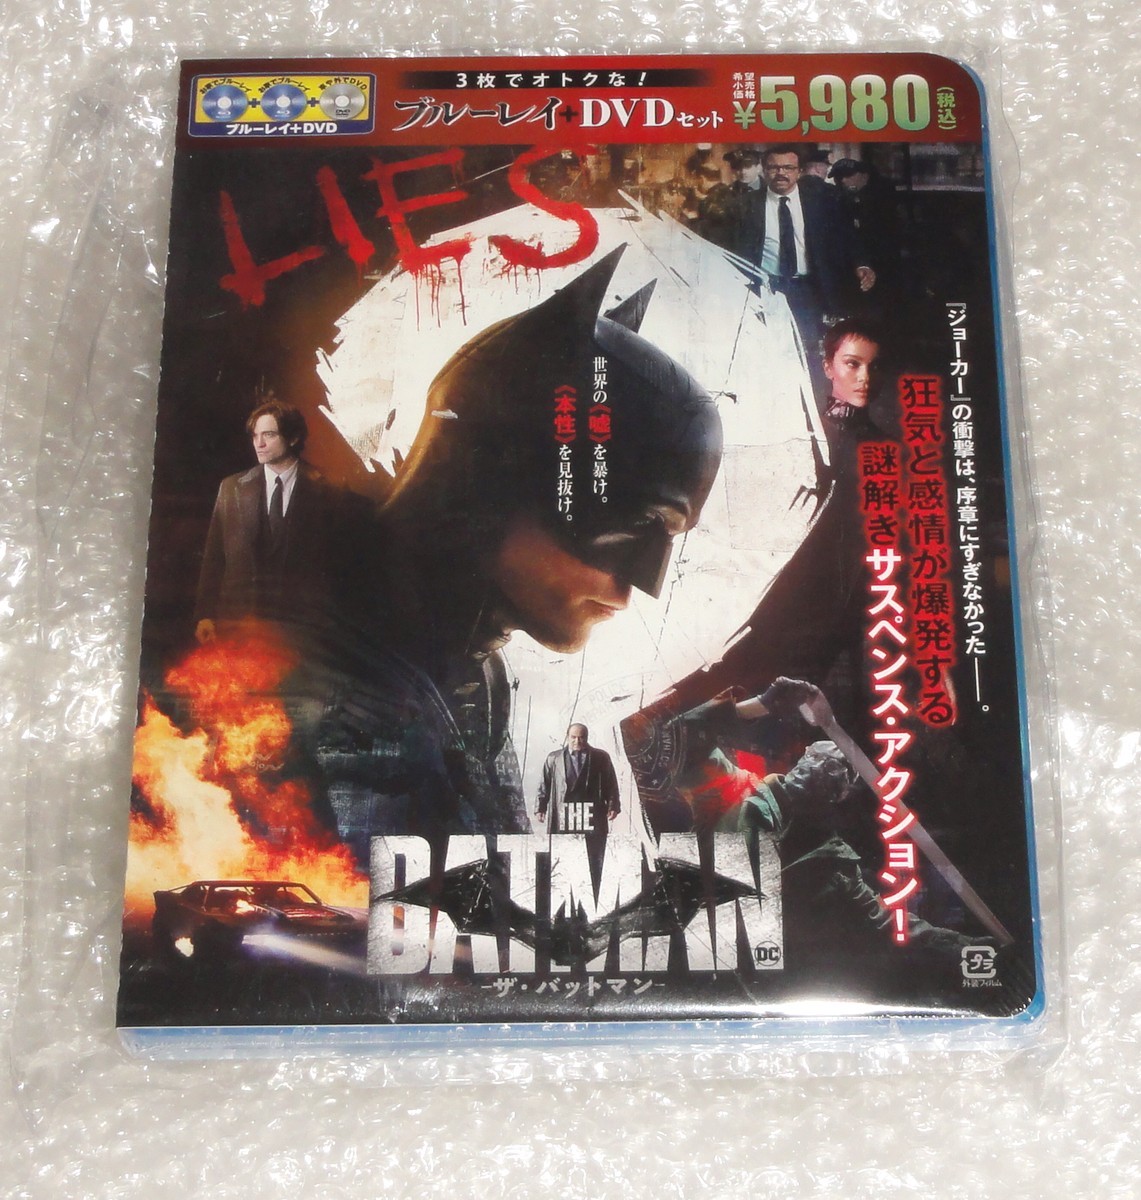 新品 THE BATMAN -ザ・バットマン- ブルーレイ&DVDセット (3枚組)(オリジナルメダル付限定版)_画像1